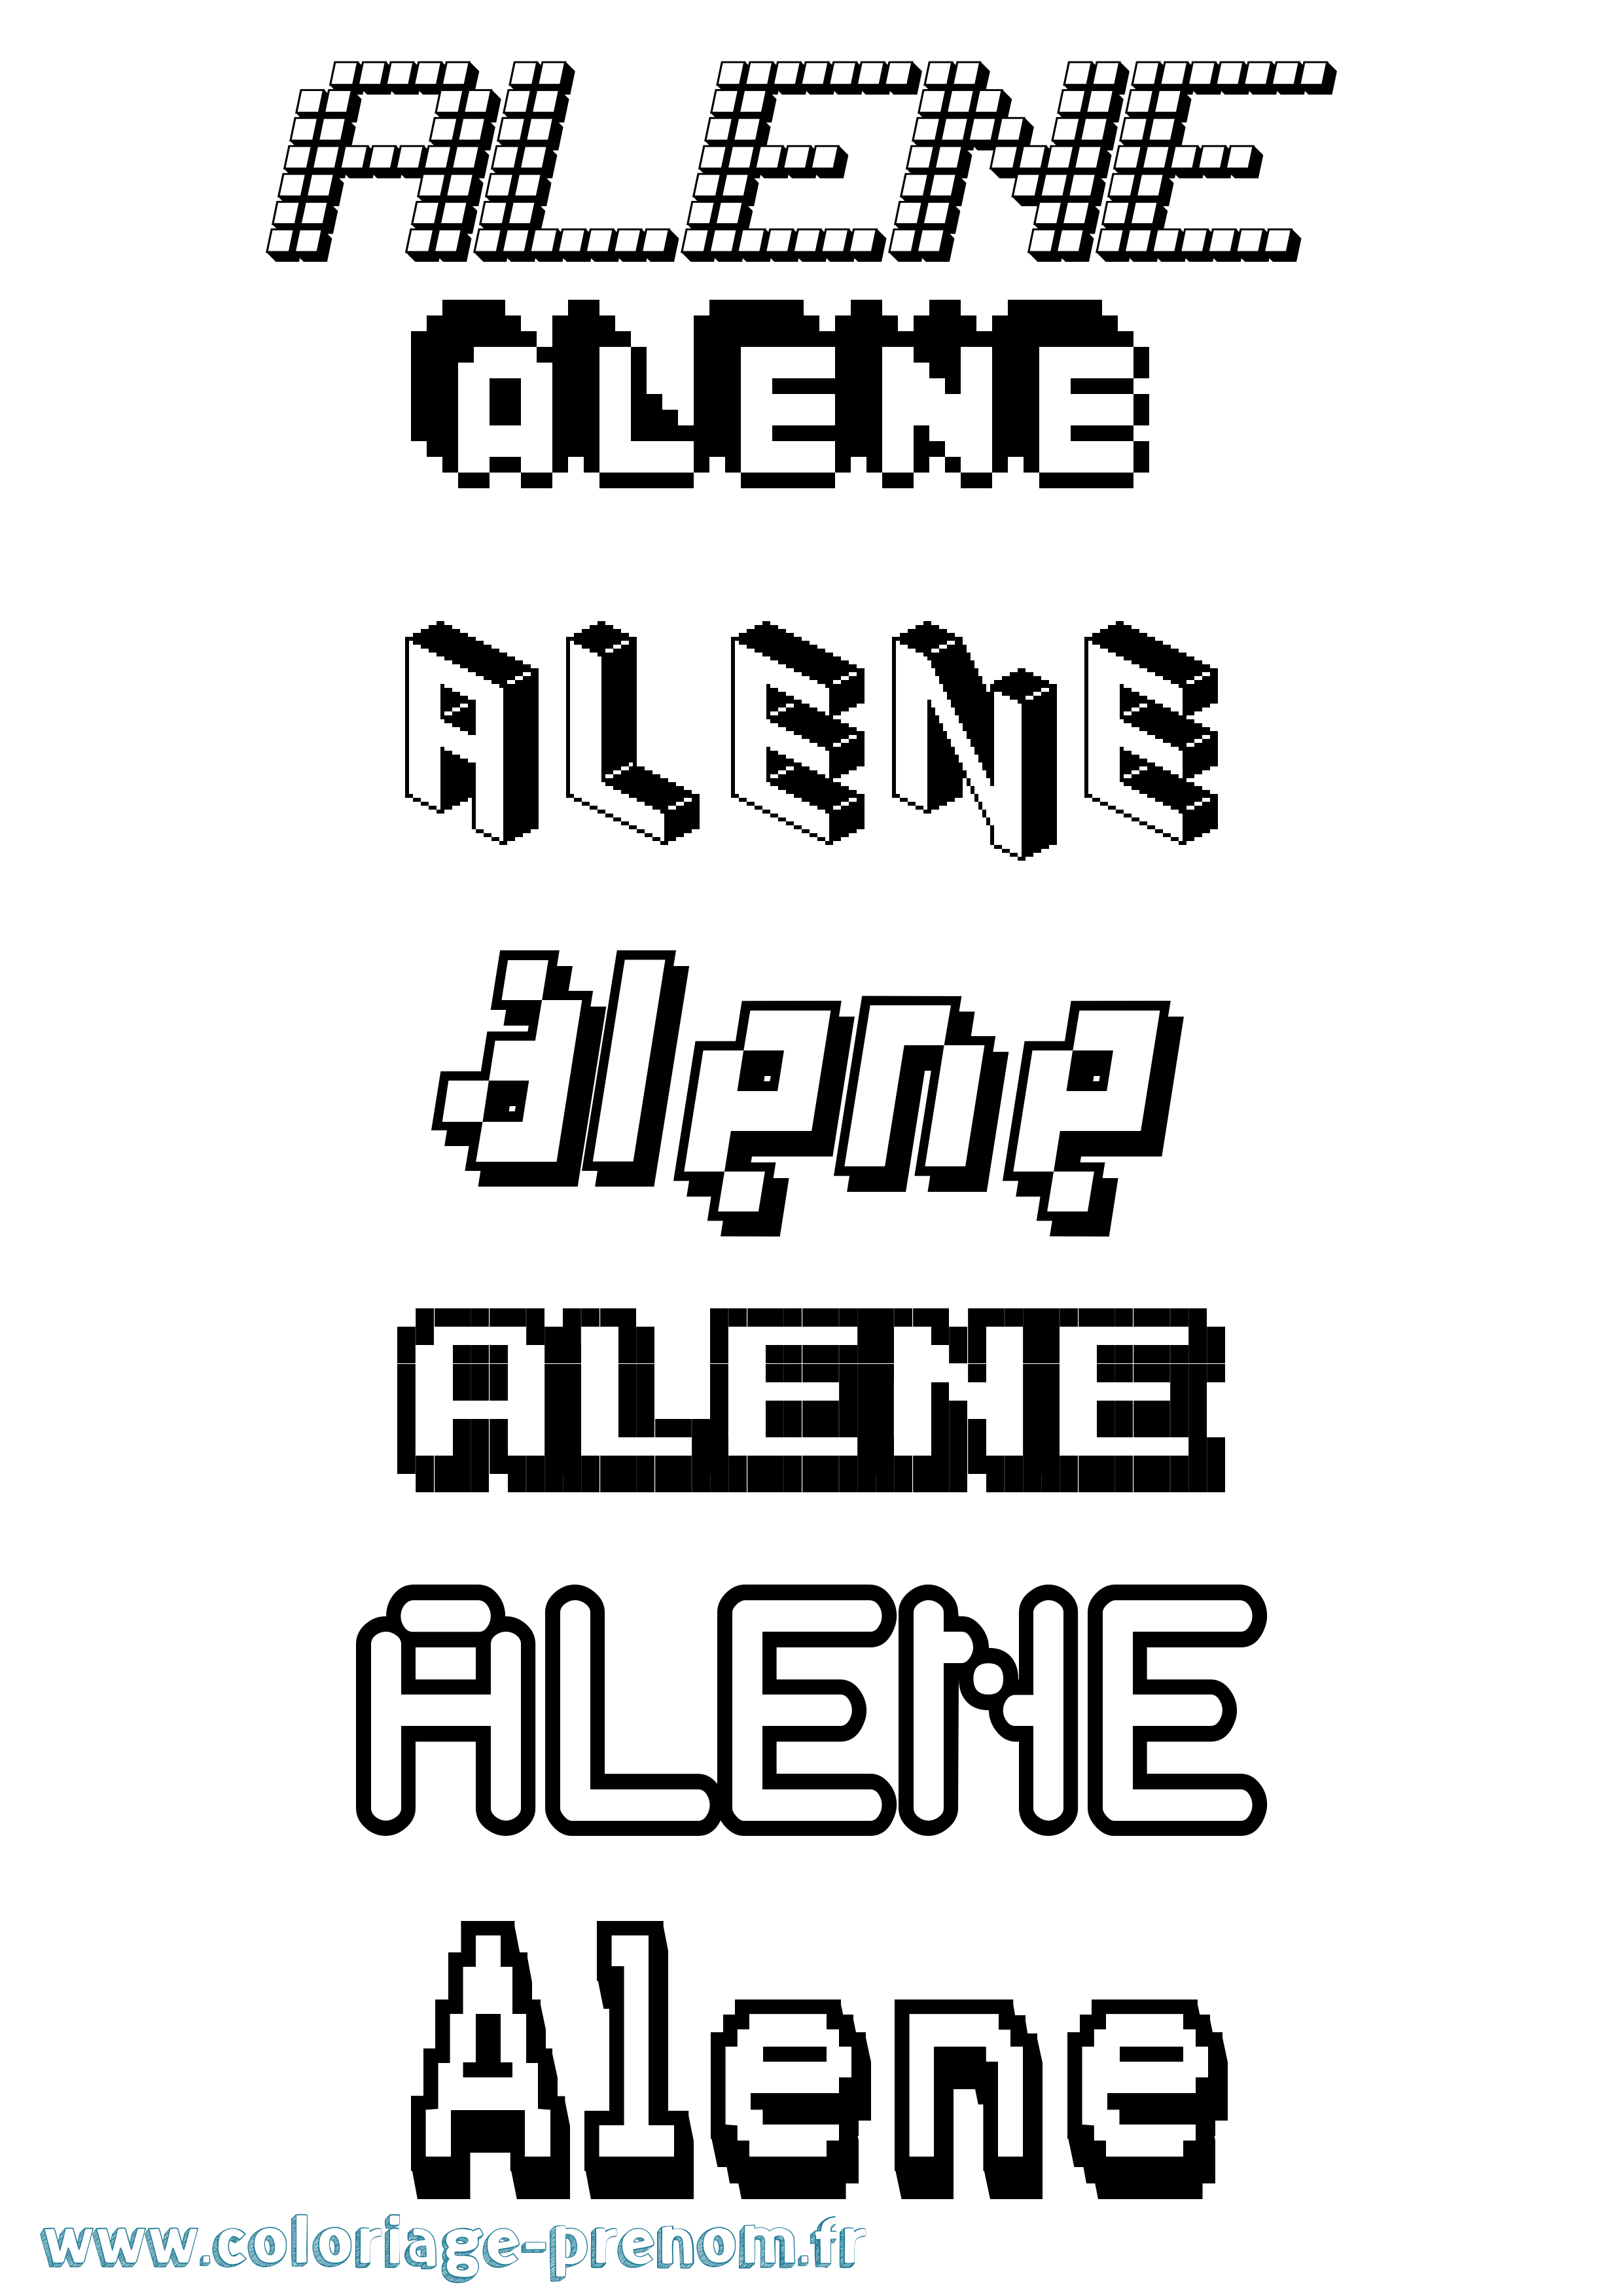 Coloriage prénom Alene Pixel